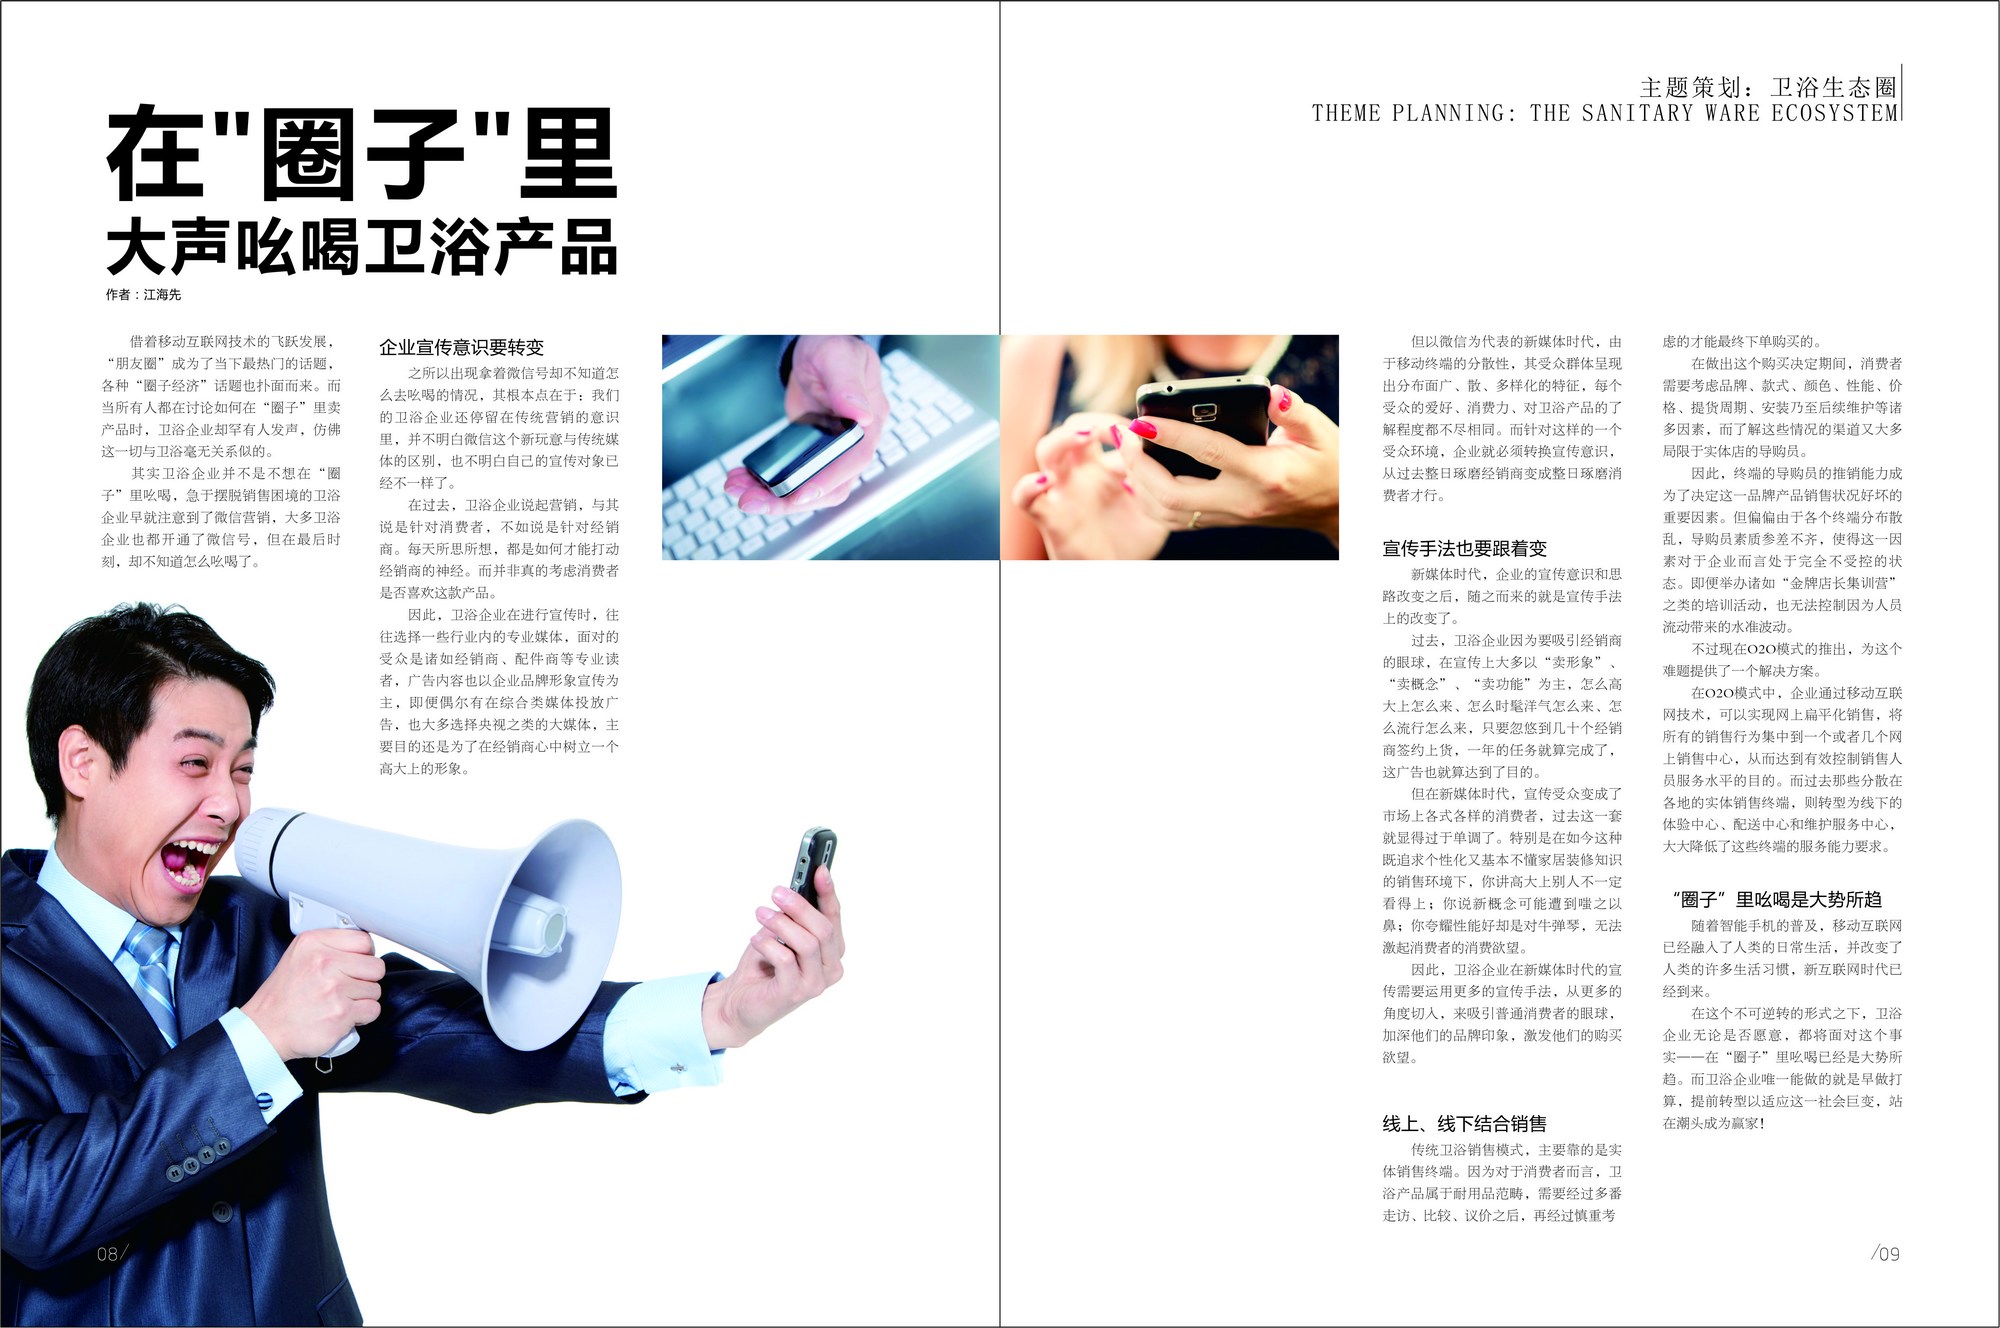 《中国卫浴》报杂志2015年6月刊第115期:文章标题—在"圈子"里大声